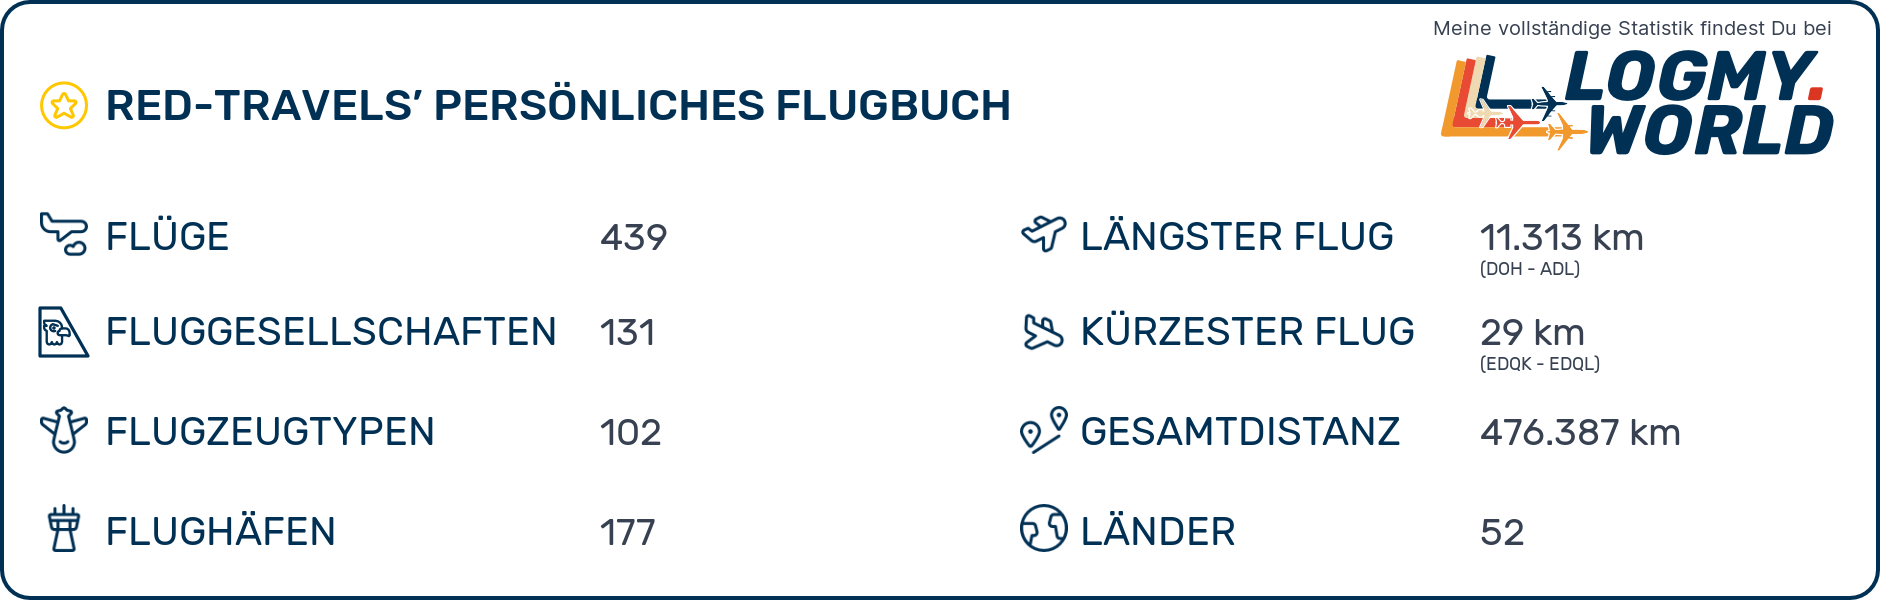 LogMy.World Flugstatistik von red-travels